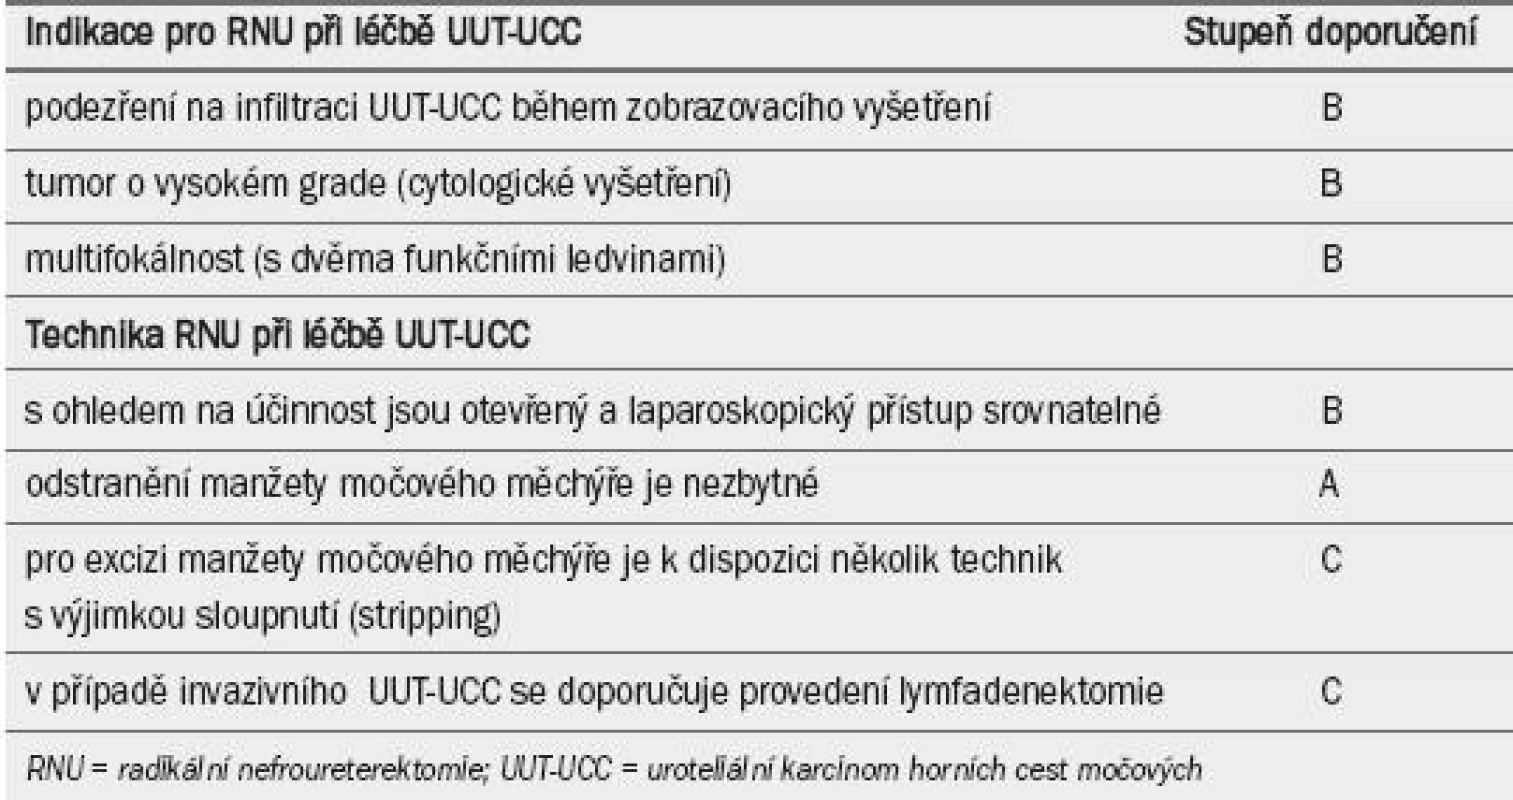 Guidelines pro radikální léčbu uroteliálního karcinomu horních cest močových: radikální nefroureterektomie.